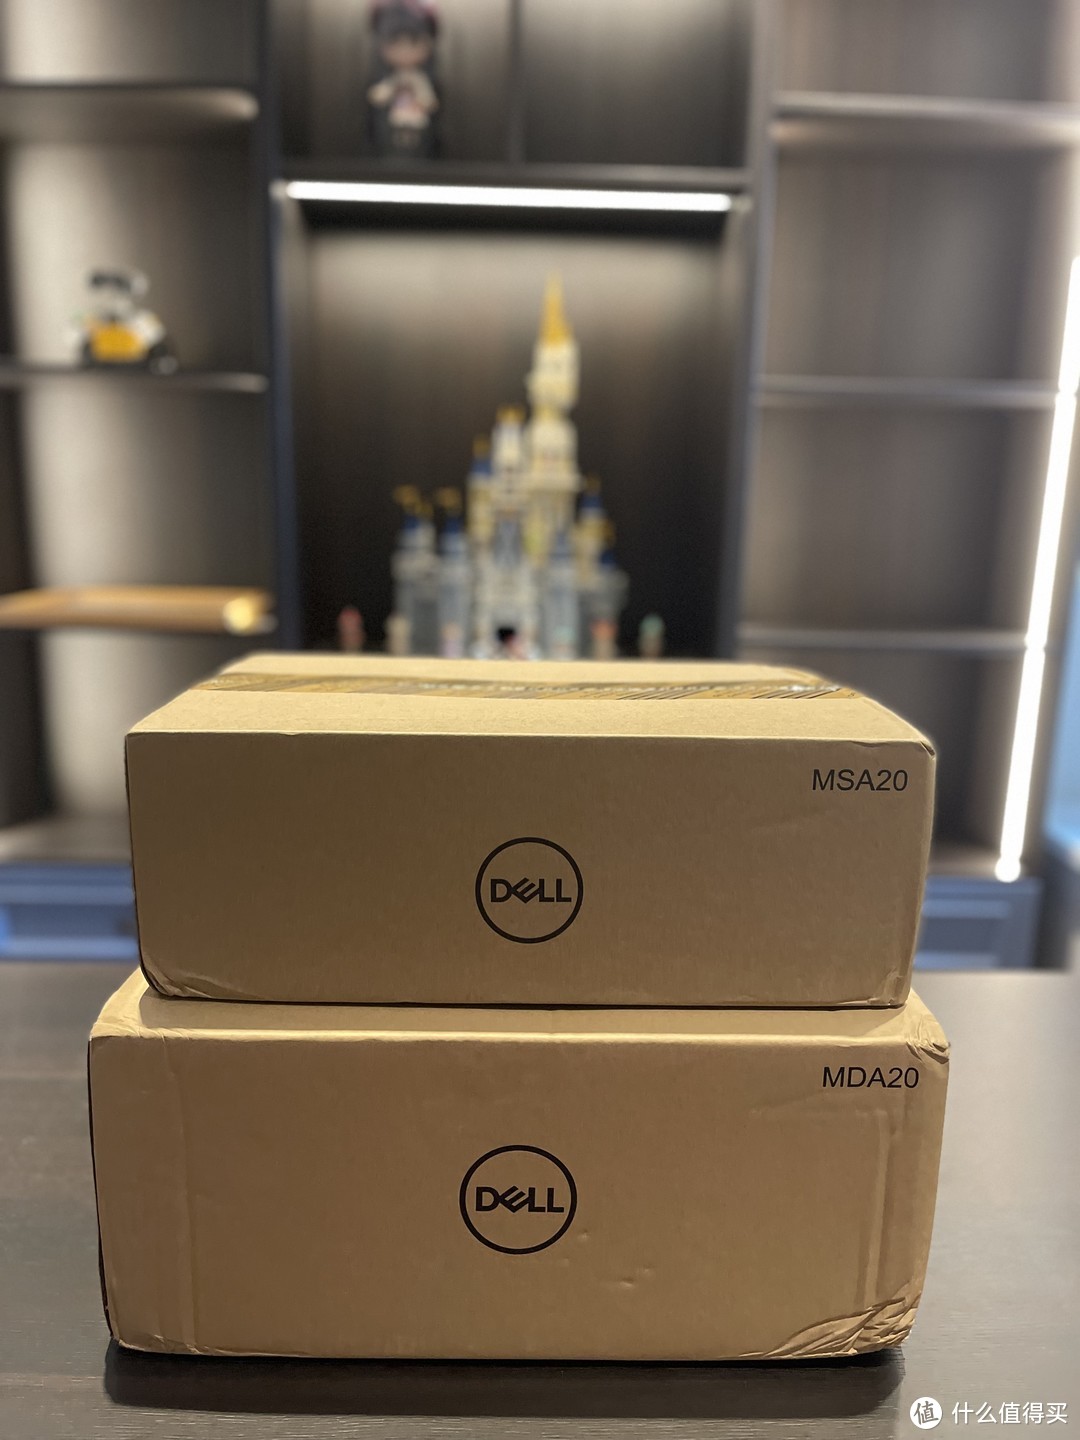 到货，全新未拆封Dell原包 ，居然不是OEM代工，是Dell自己造的？至少外包装和商品说明书没有说任何代工厂信息